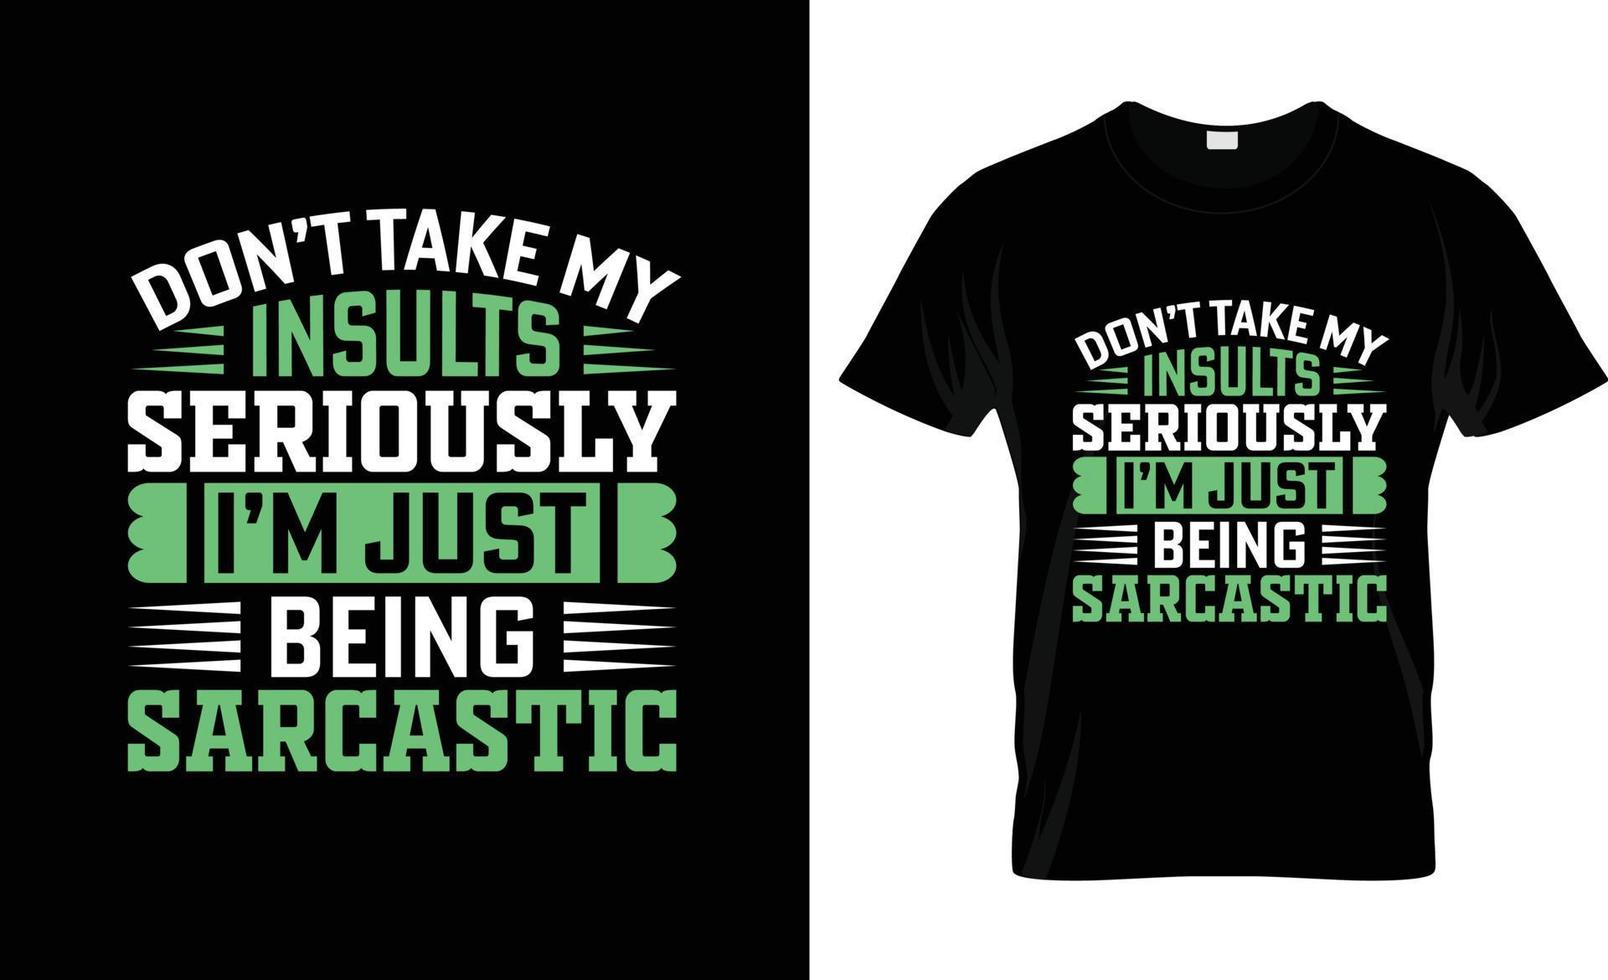 conception de t-shirt sarcastique, slogan de t-shirt sarcastique et conception de vêtements, typographie sarcastique, vecteur sarcastique, illustration sarcastique